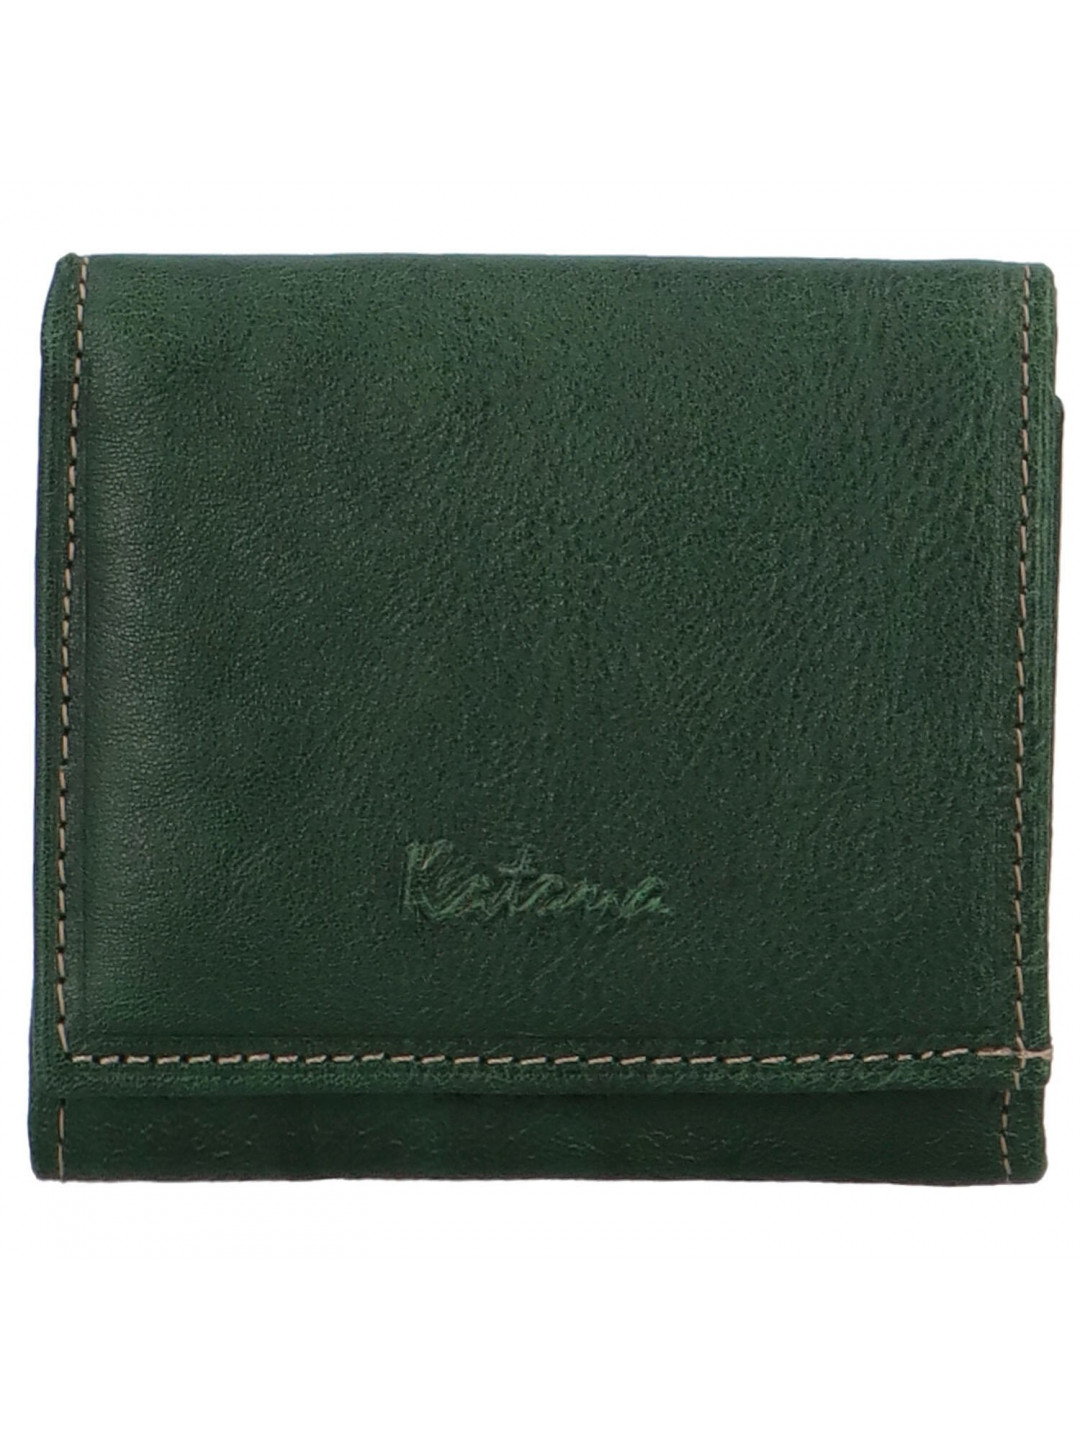 Elegantní dámská peněženka Katana Kittina zelená